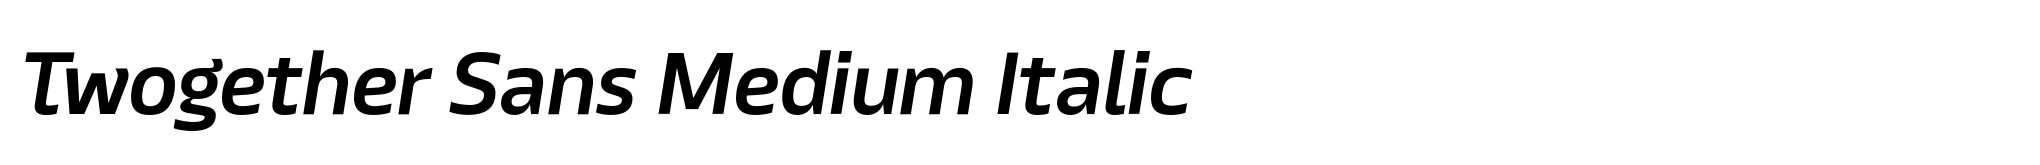 Twogether Sans Medium Italic image